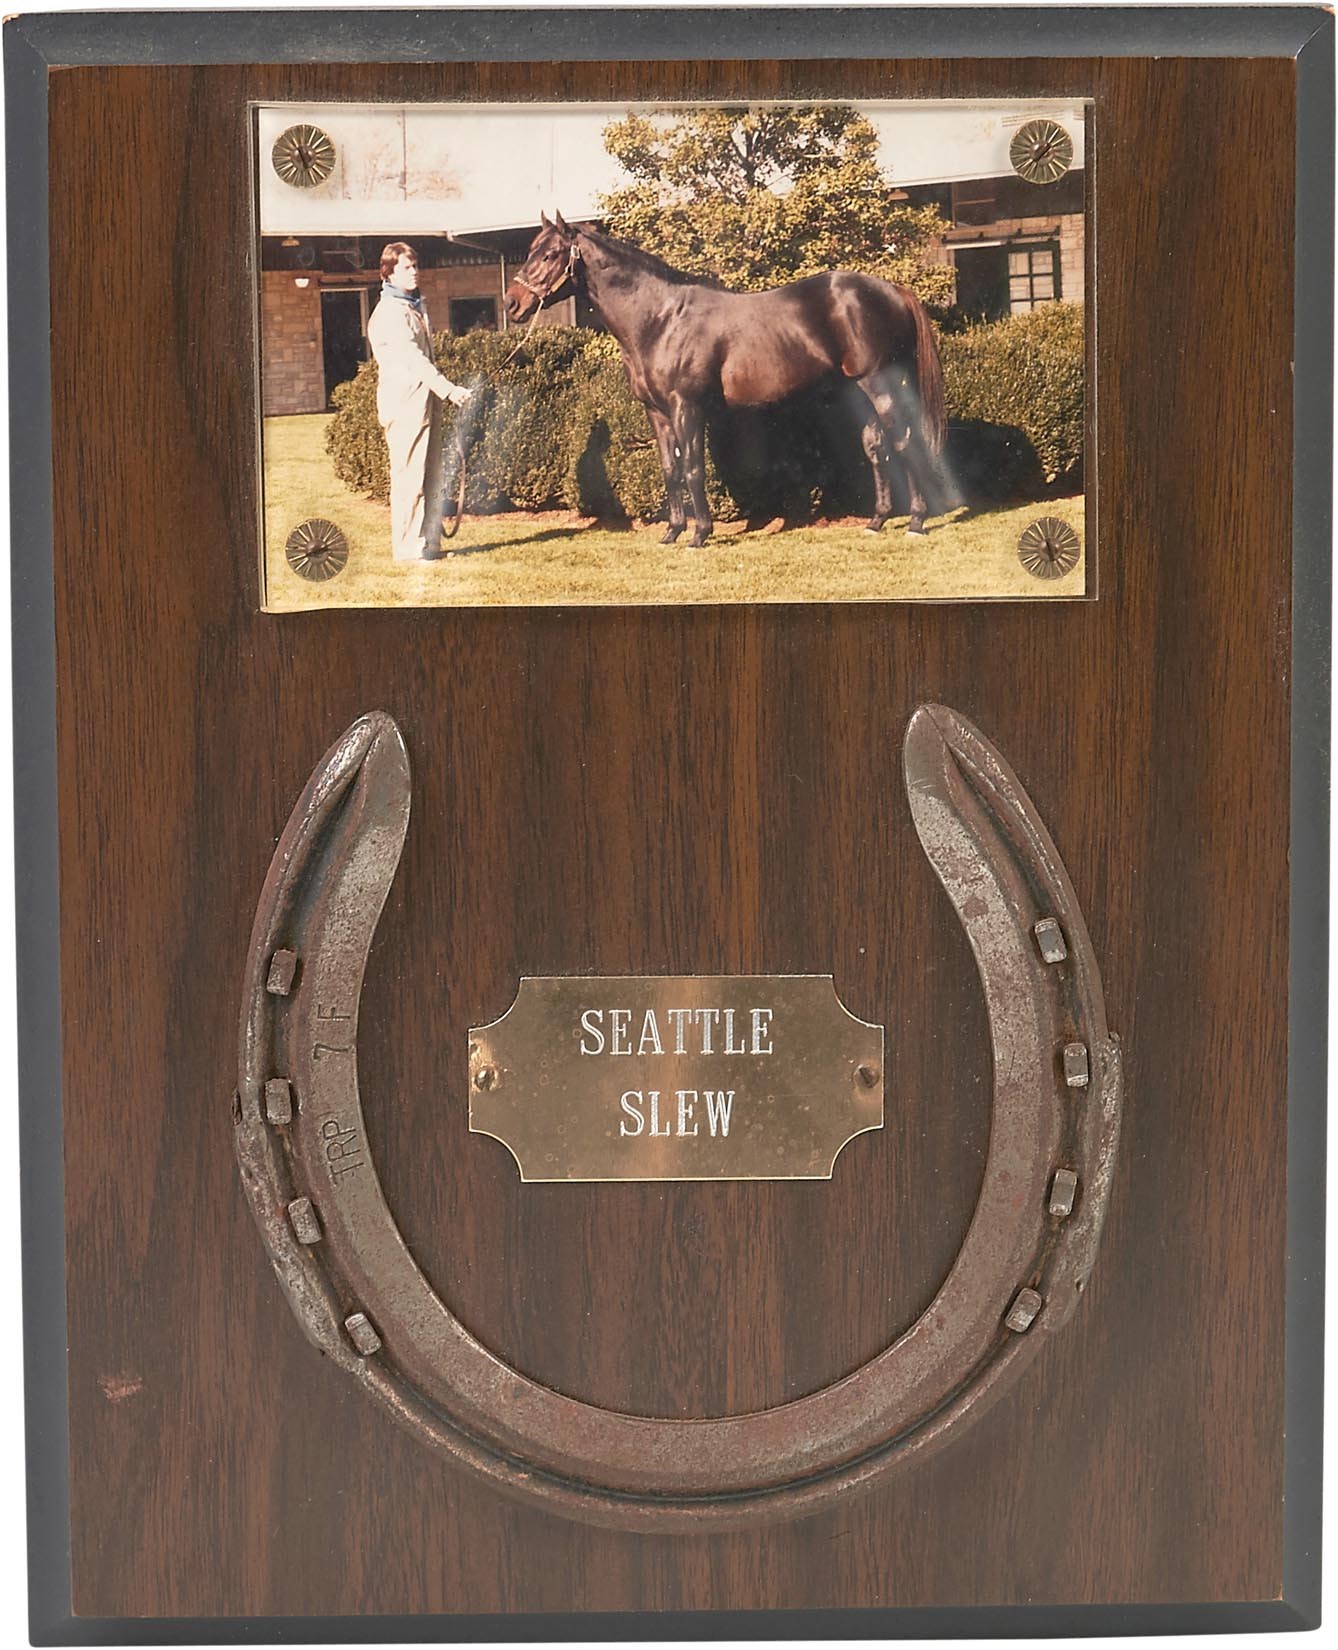 - 1984 Seattle Slew Worn Horseshoe - from Spendthrift Farm Groomsman (LOA)